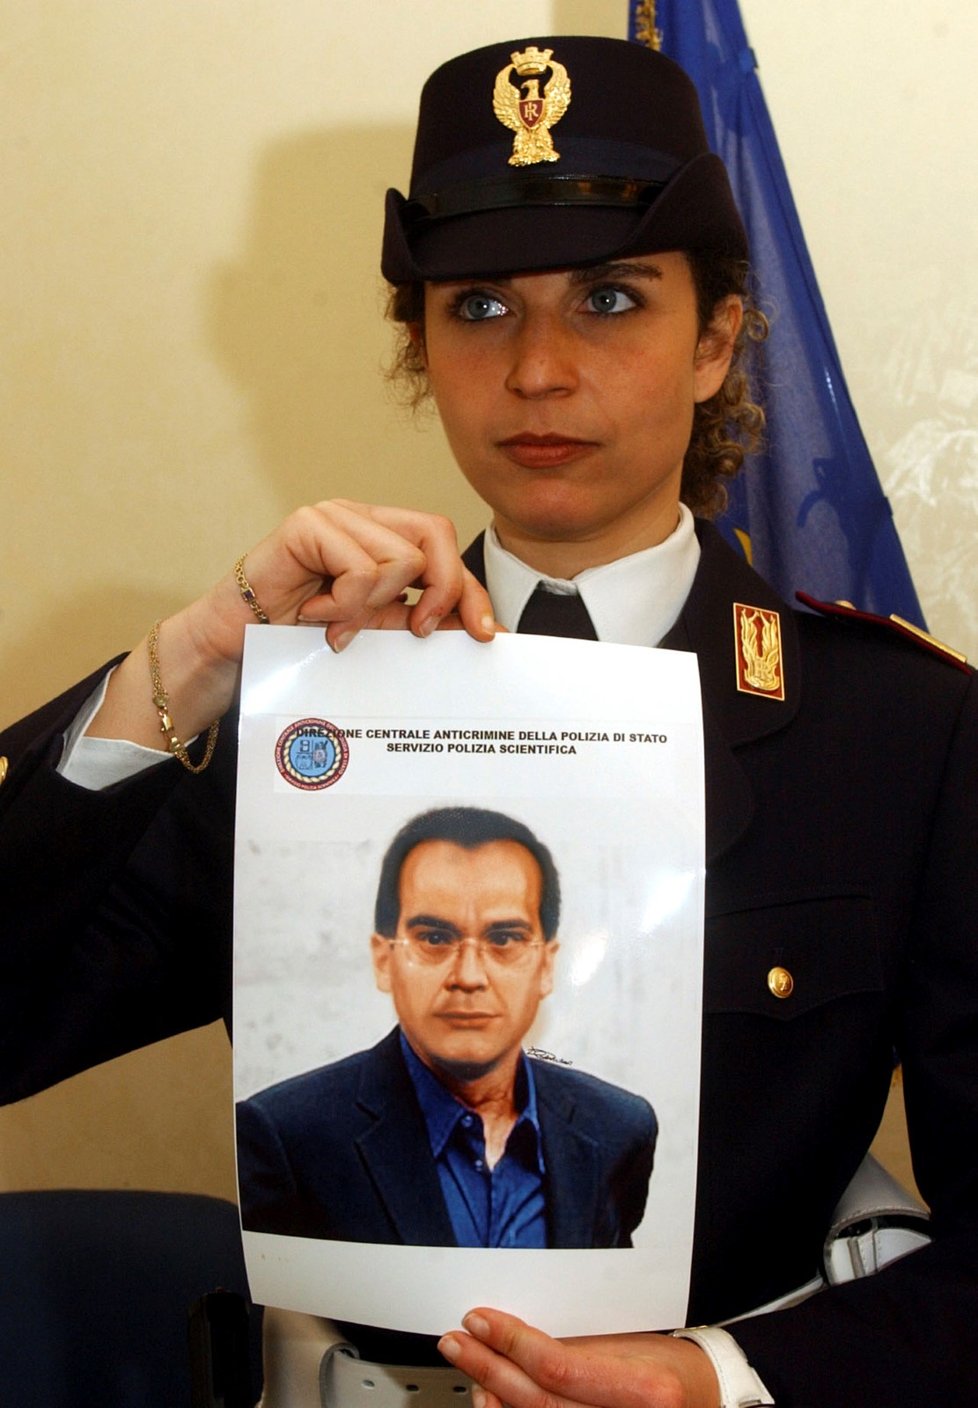 Italská policistka představuje identikit (pravděpodobnou podobu) mafiána  Mattea Messiny Denara.